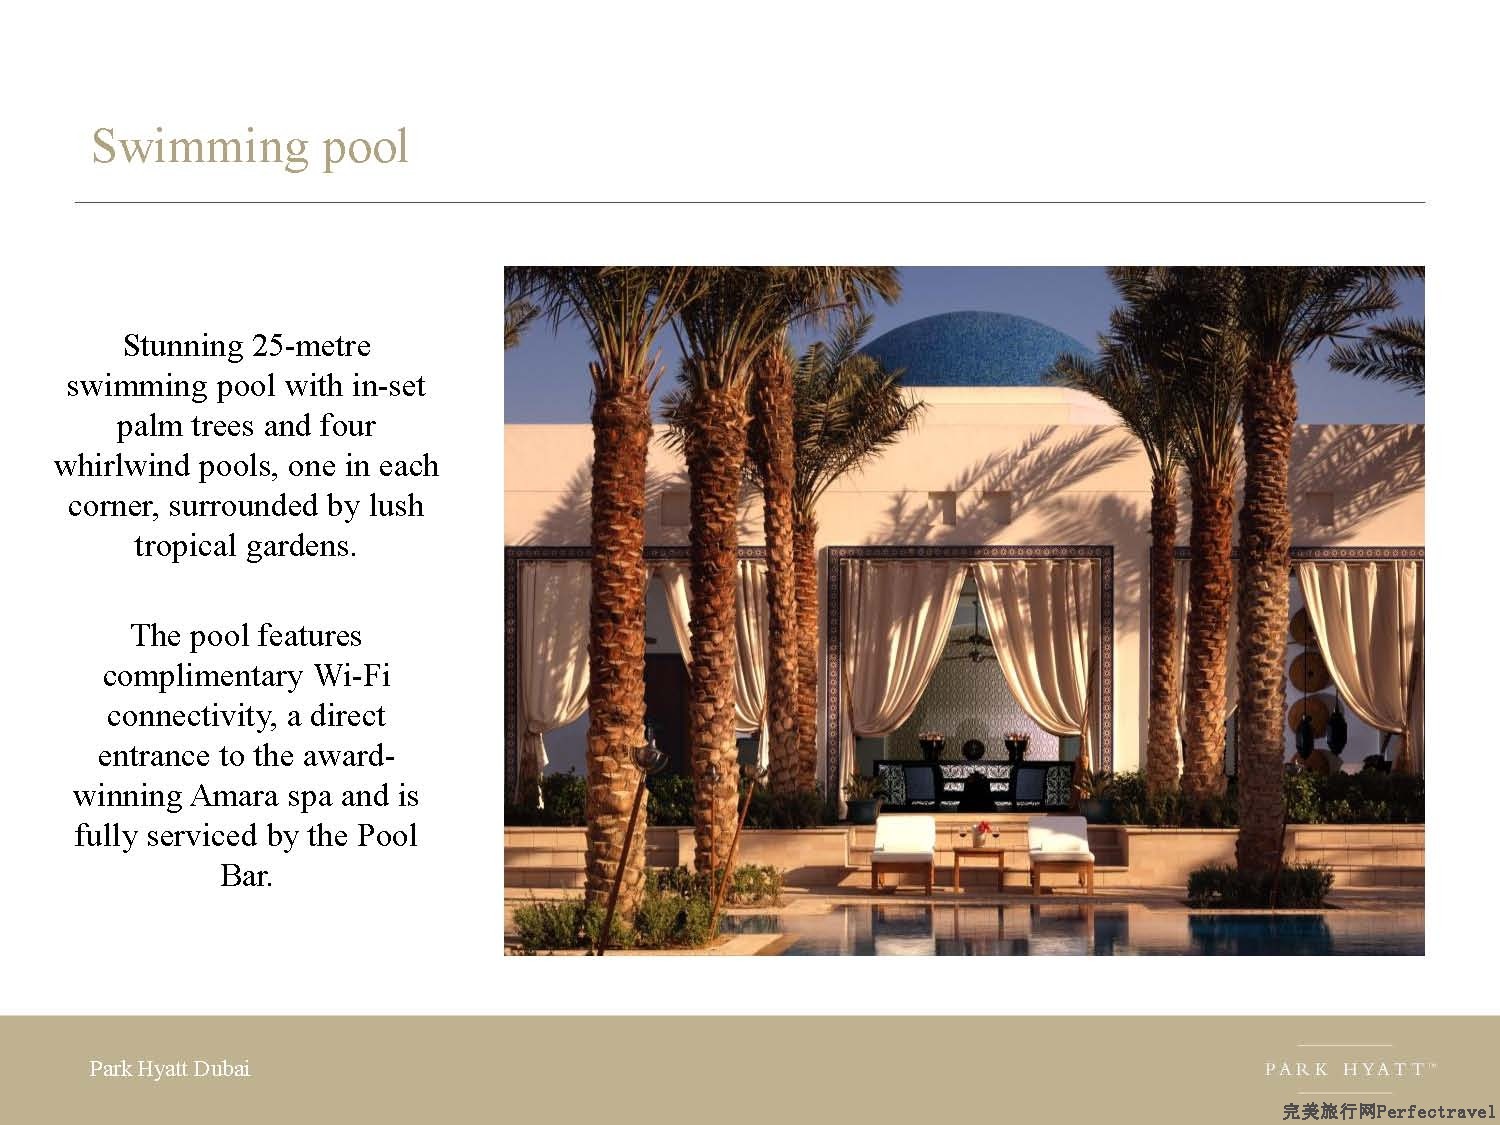 Park Hyatt Dubai presentation - 2013_Page_06.jpg